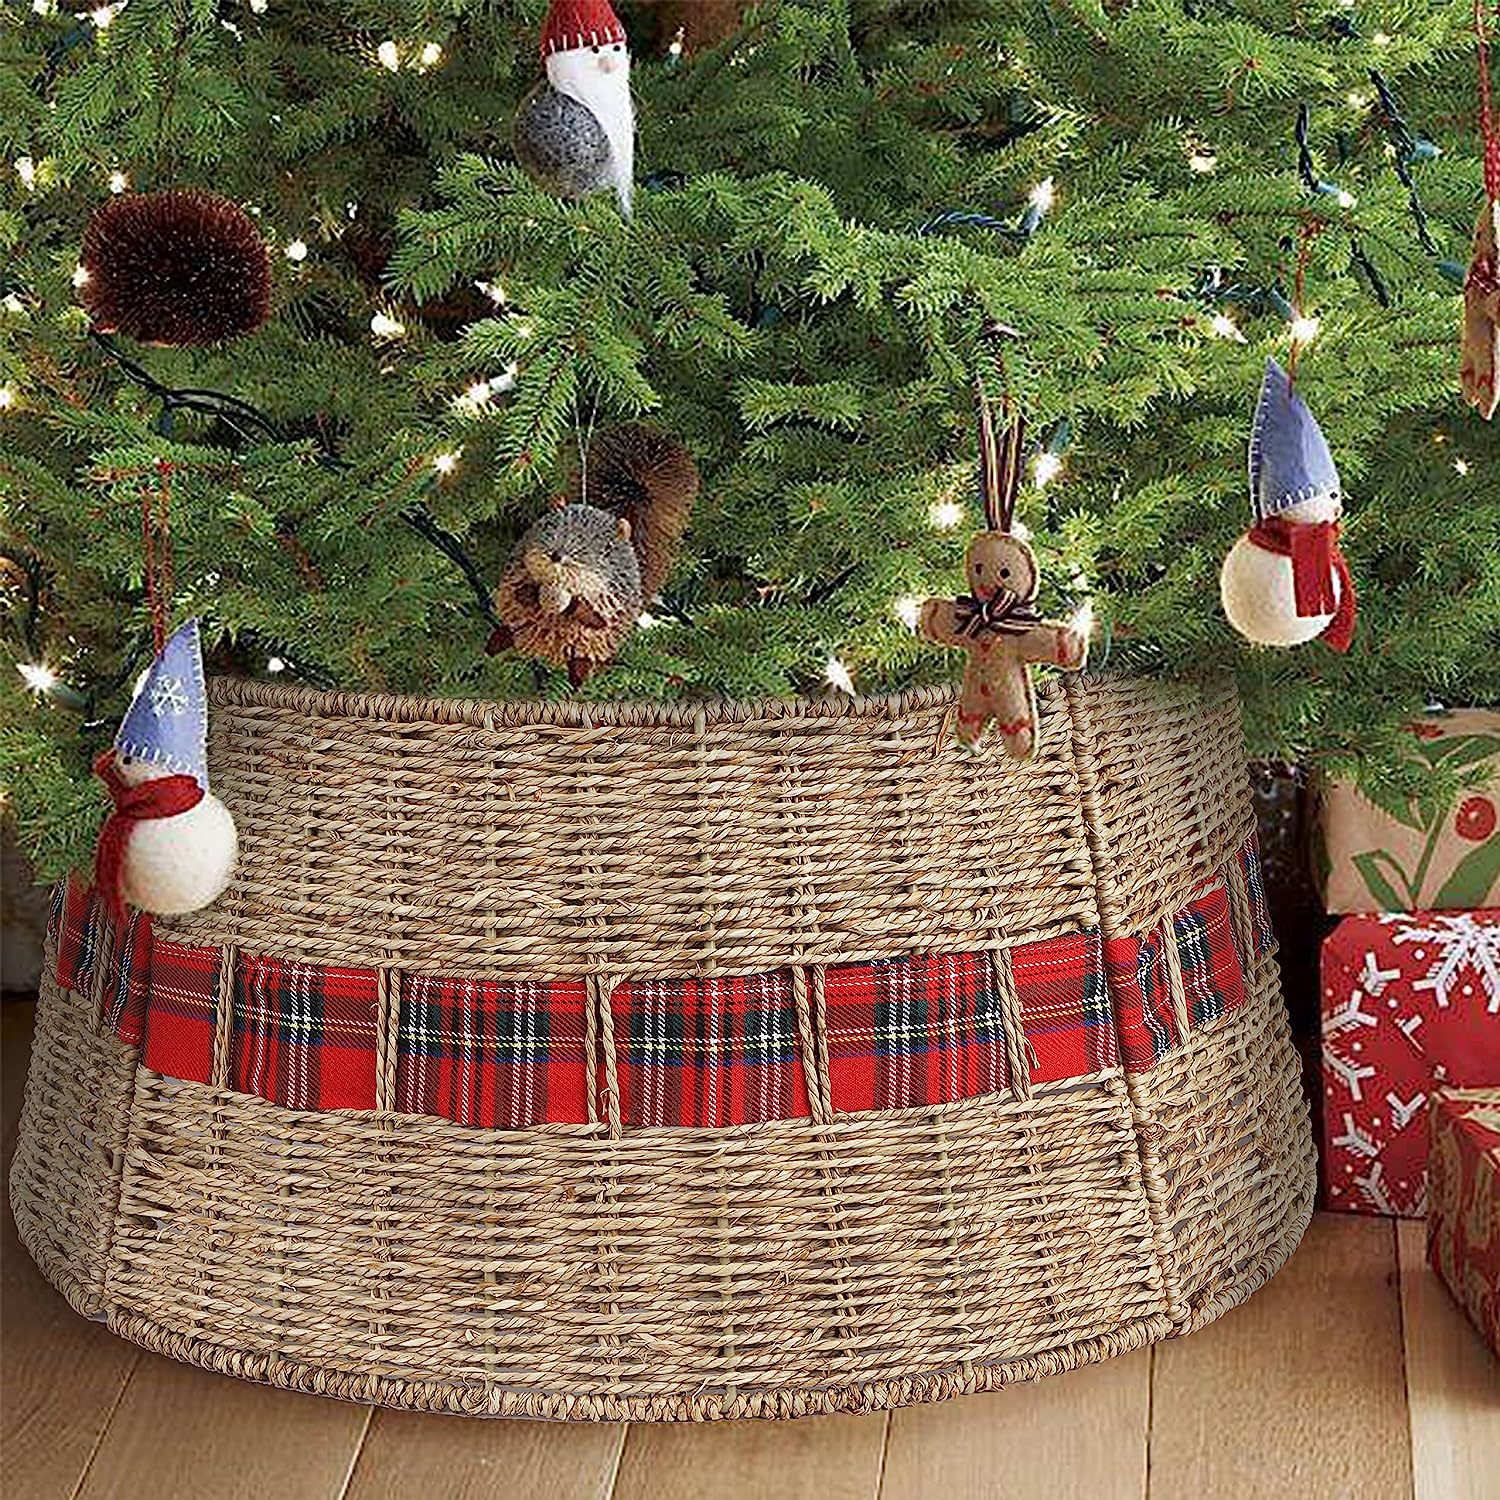 亚马逊新款草编圣诞树围底座圣诞树场景布置道具圣诞工艺品装饰品